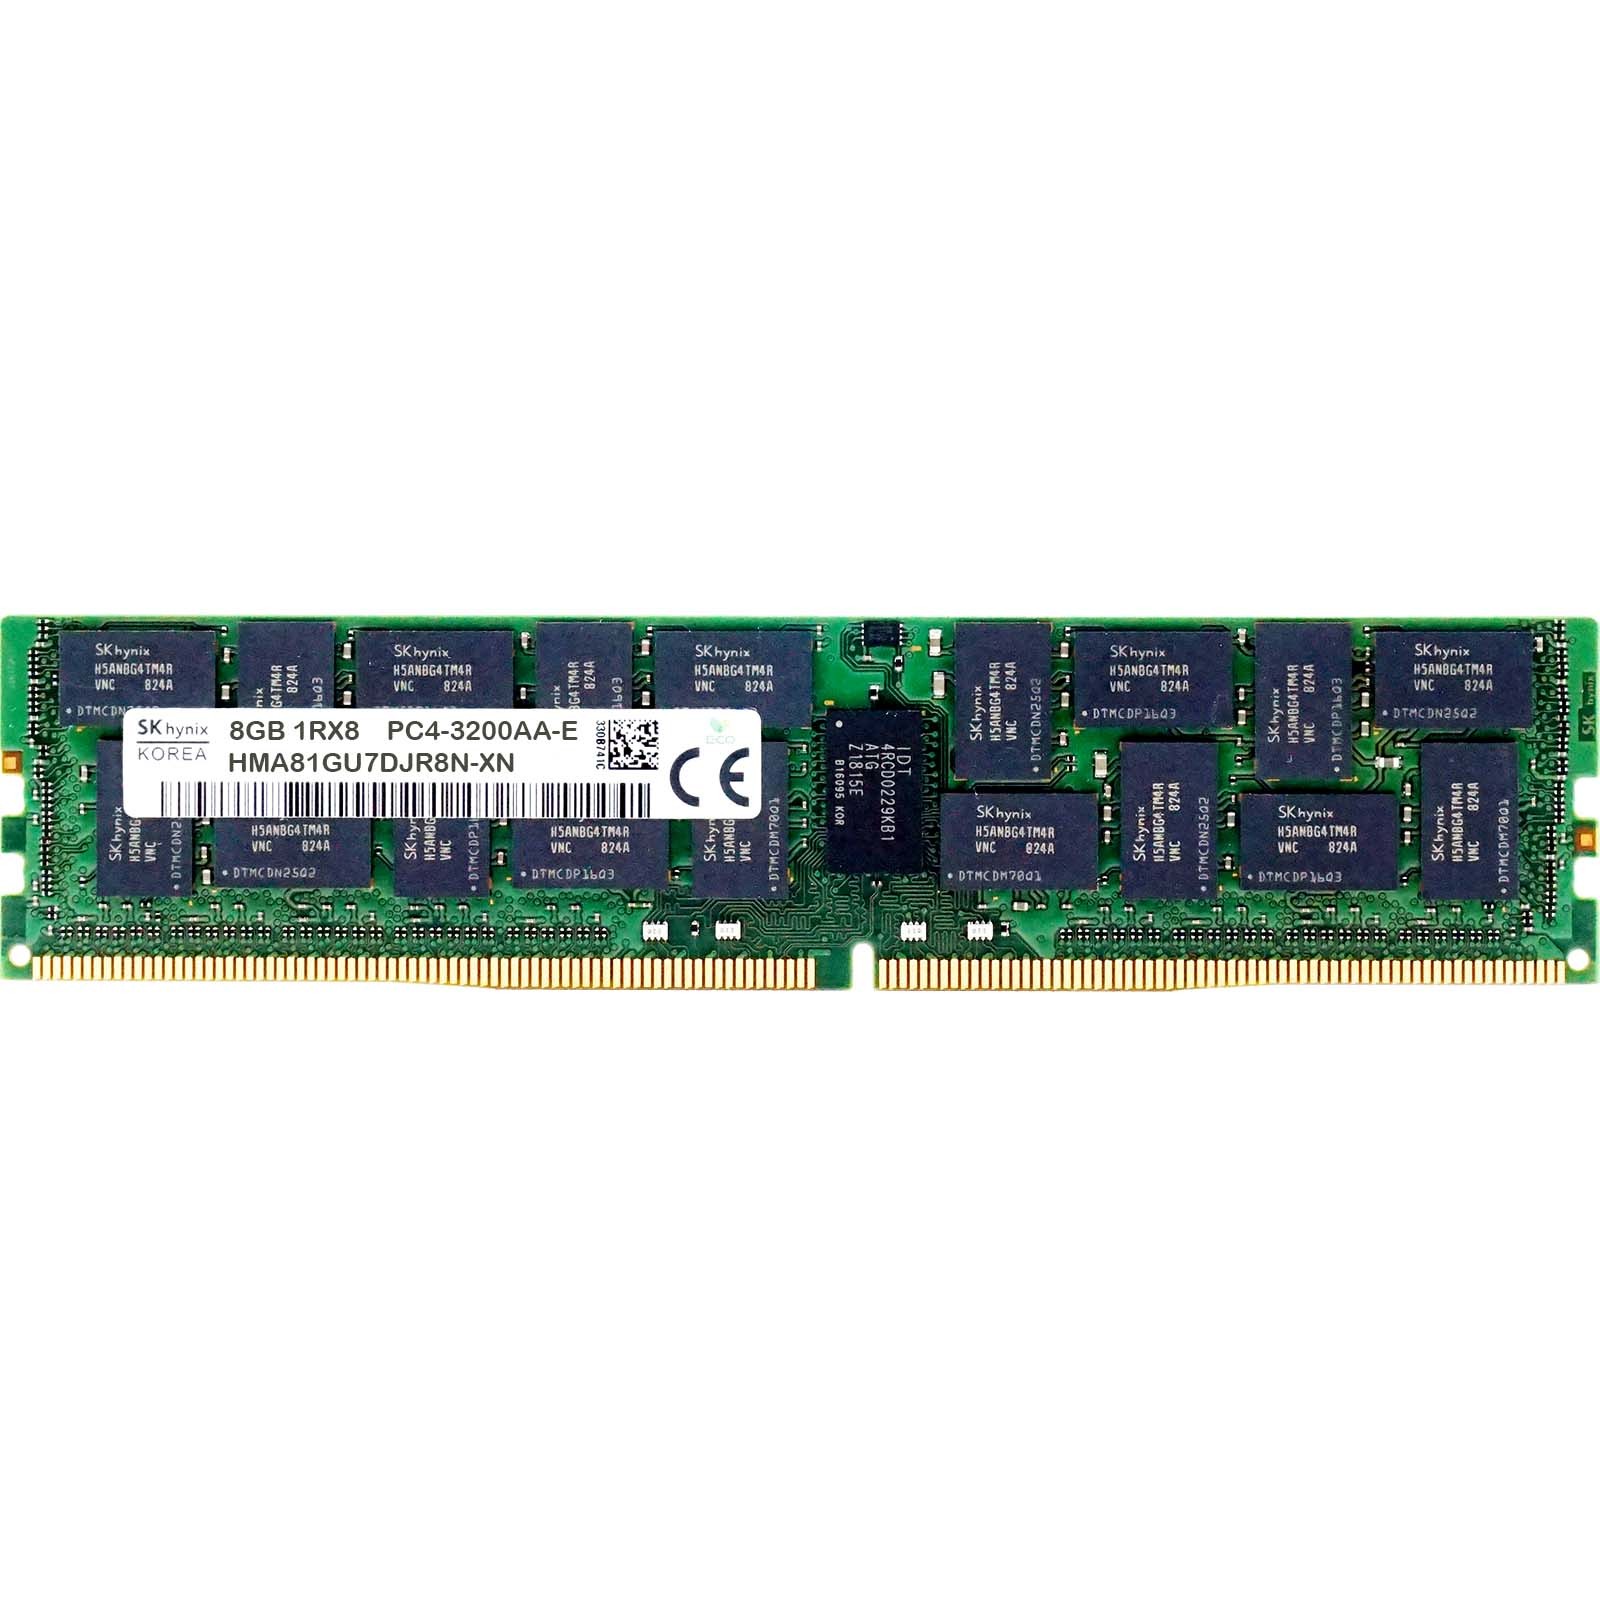 Hynix (HMA81GU7DJR8N-XN) - 8GB PC4-25600AA-E (1RX8, DDR4-3200MHz) RAM